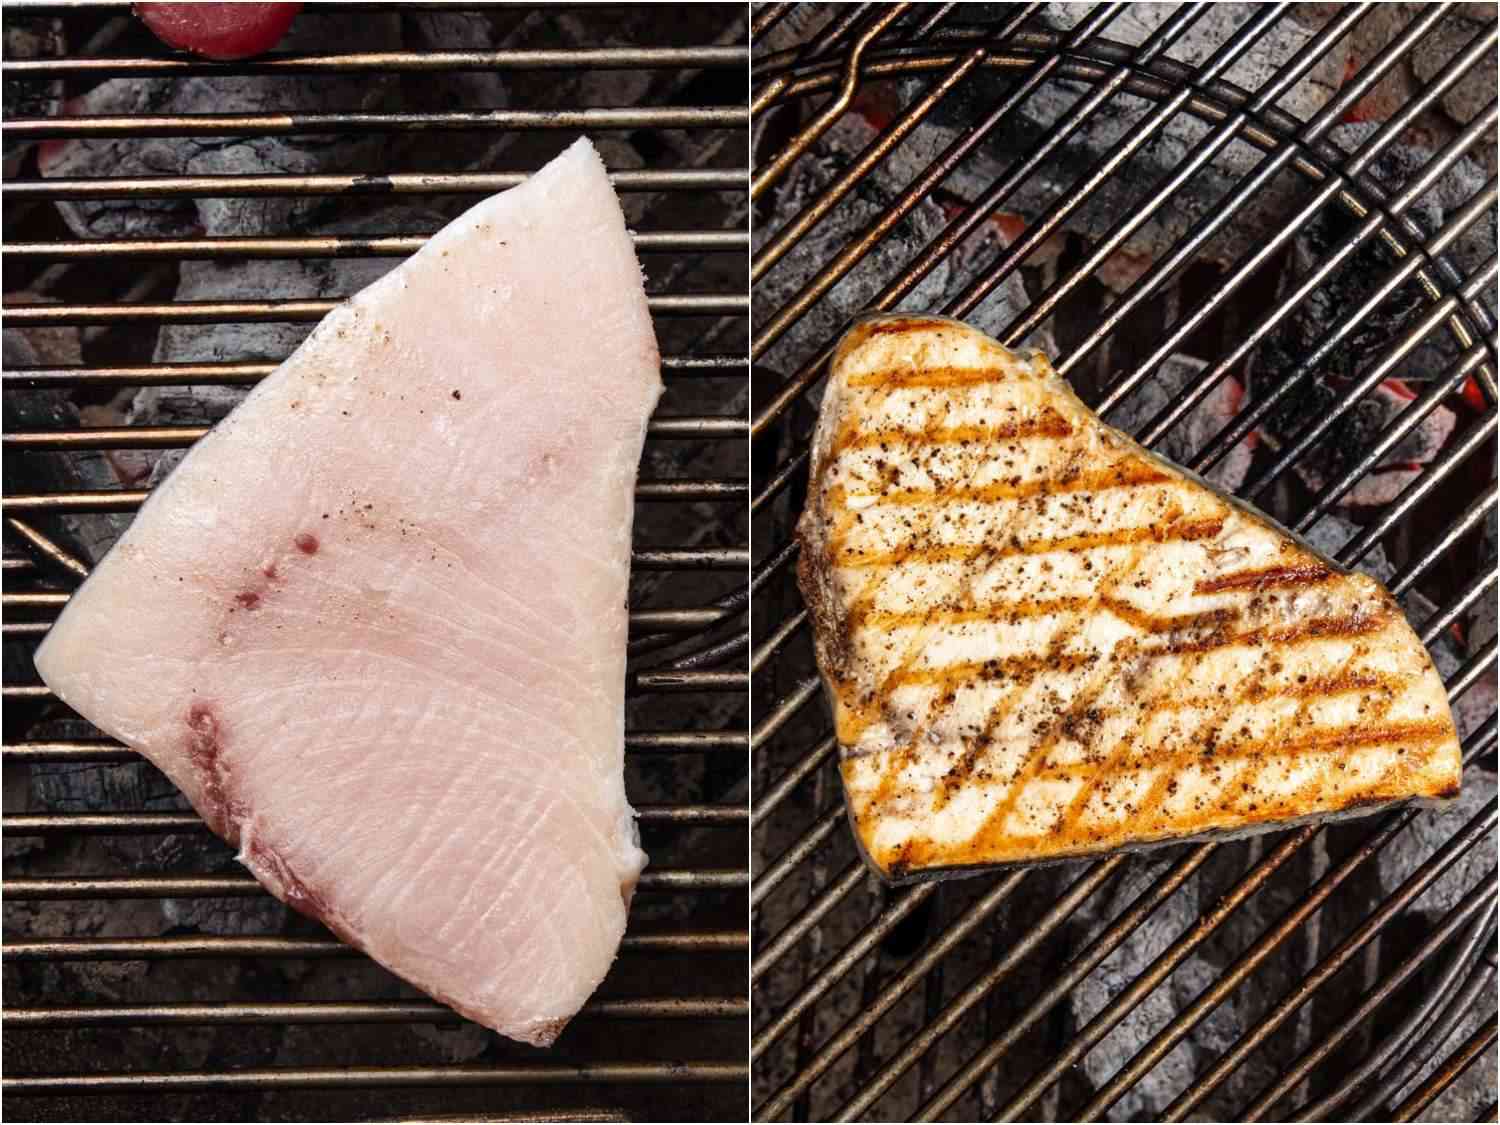 两张并排的图片，一张显示的是刚上烤架的生剑鱼牛排，另一张显示的是牛排仍在烤架上，但几乎完全熟了，有漂亮的烧烤线